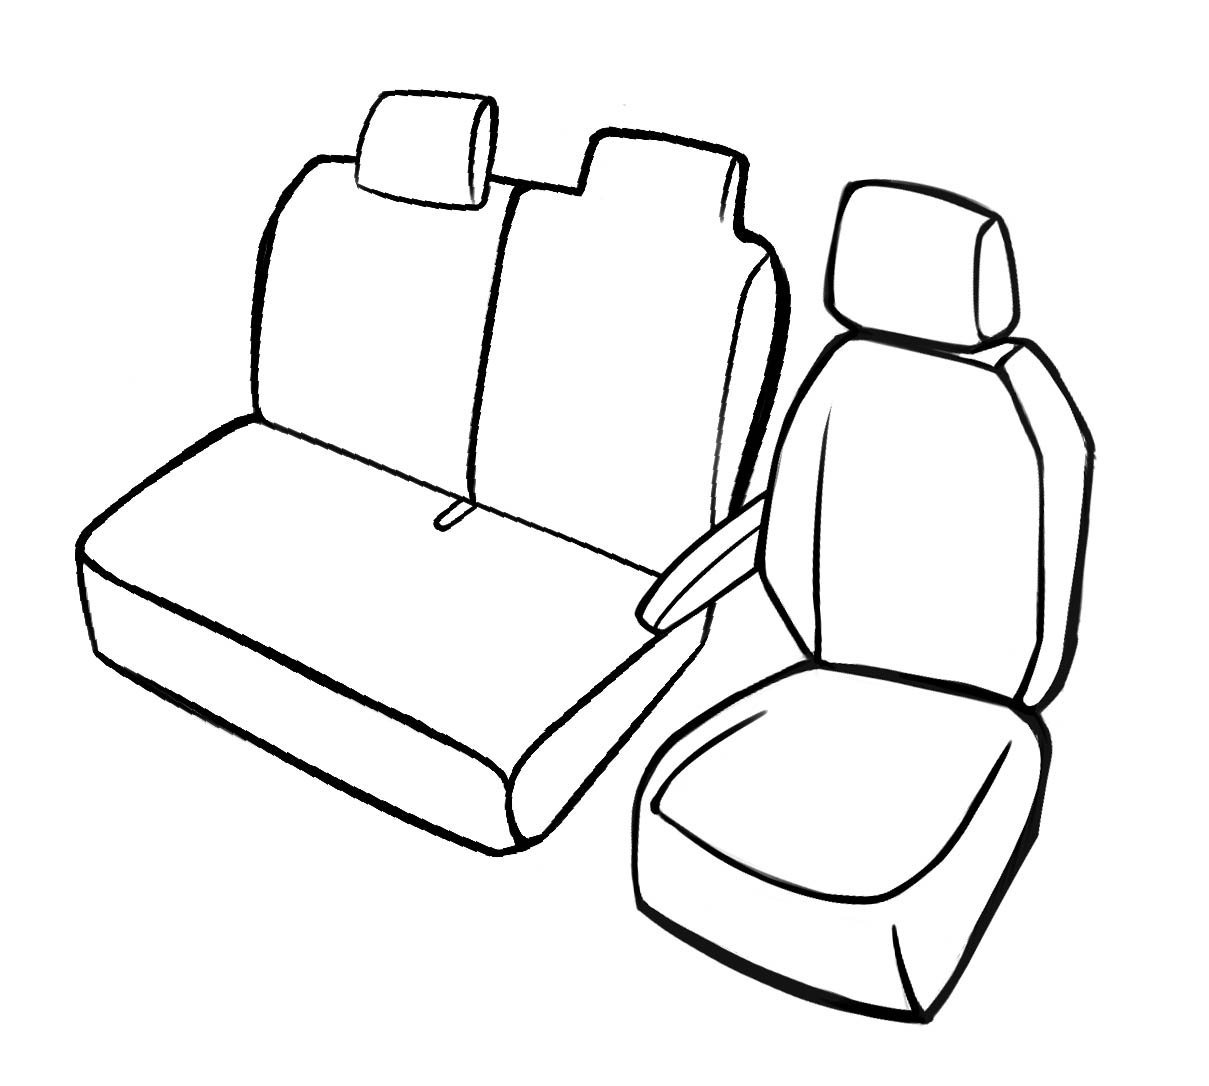 Premium Housse de siège pour Renault Master III 02/2010- auj., 1 housse de siège simple avant + housse d'accoudoir, 1 couverture de banc double